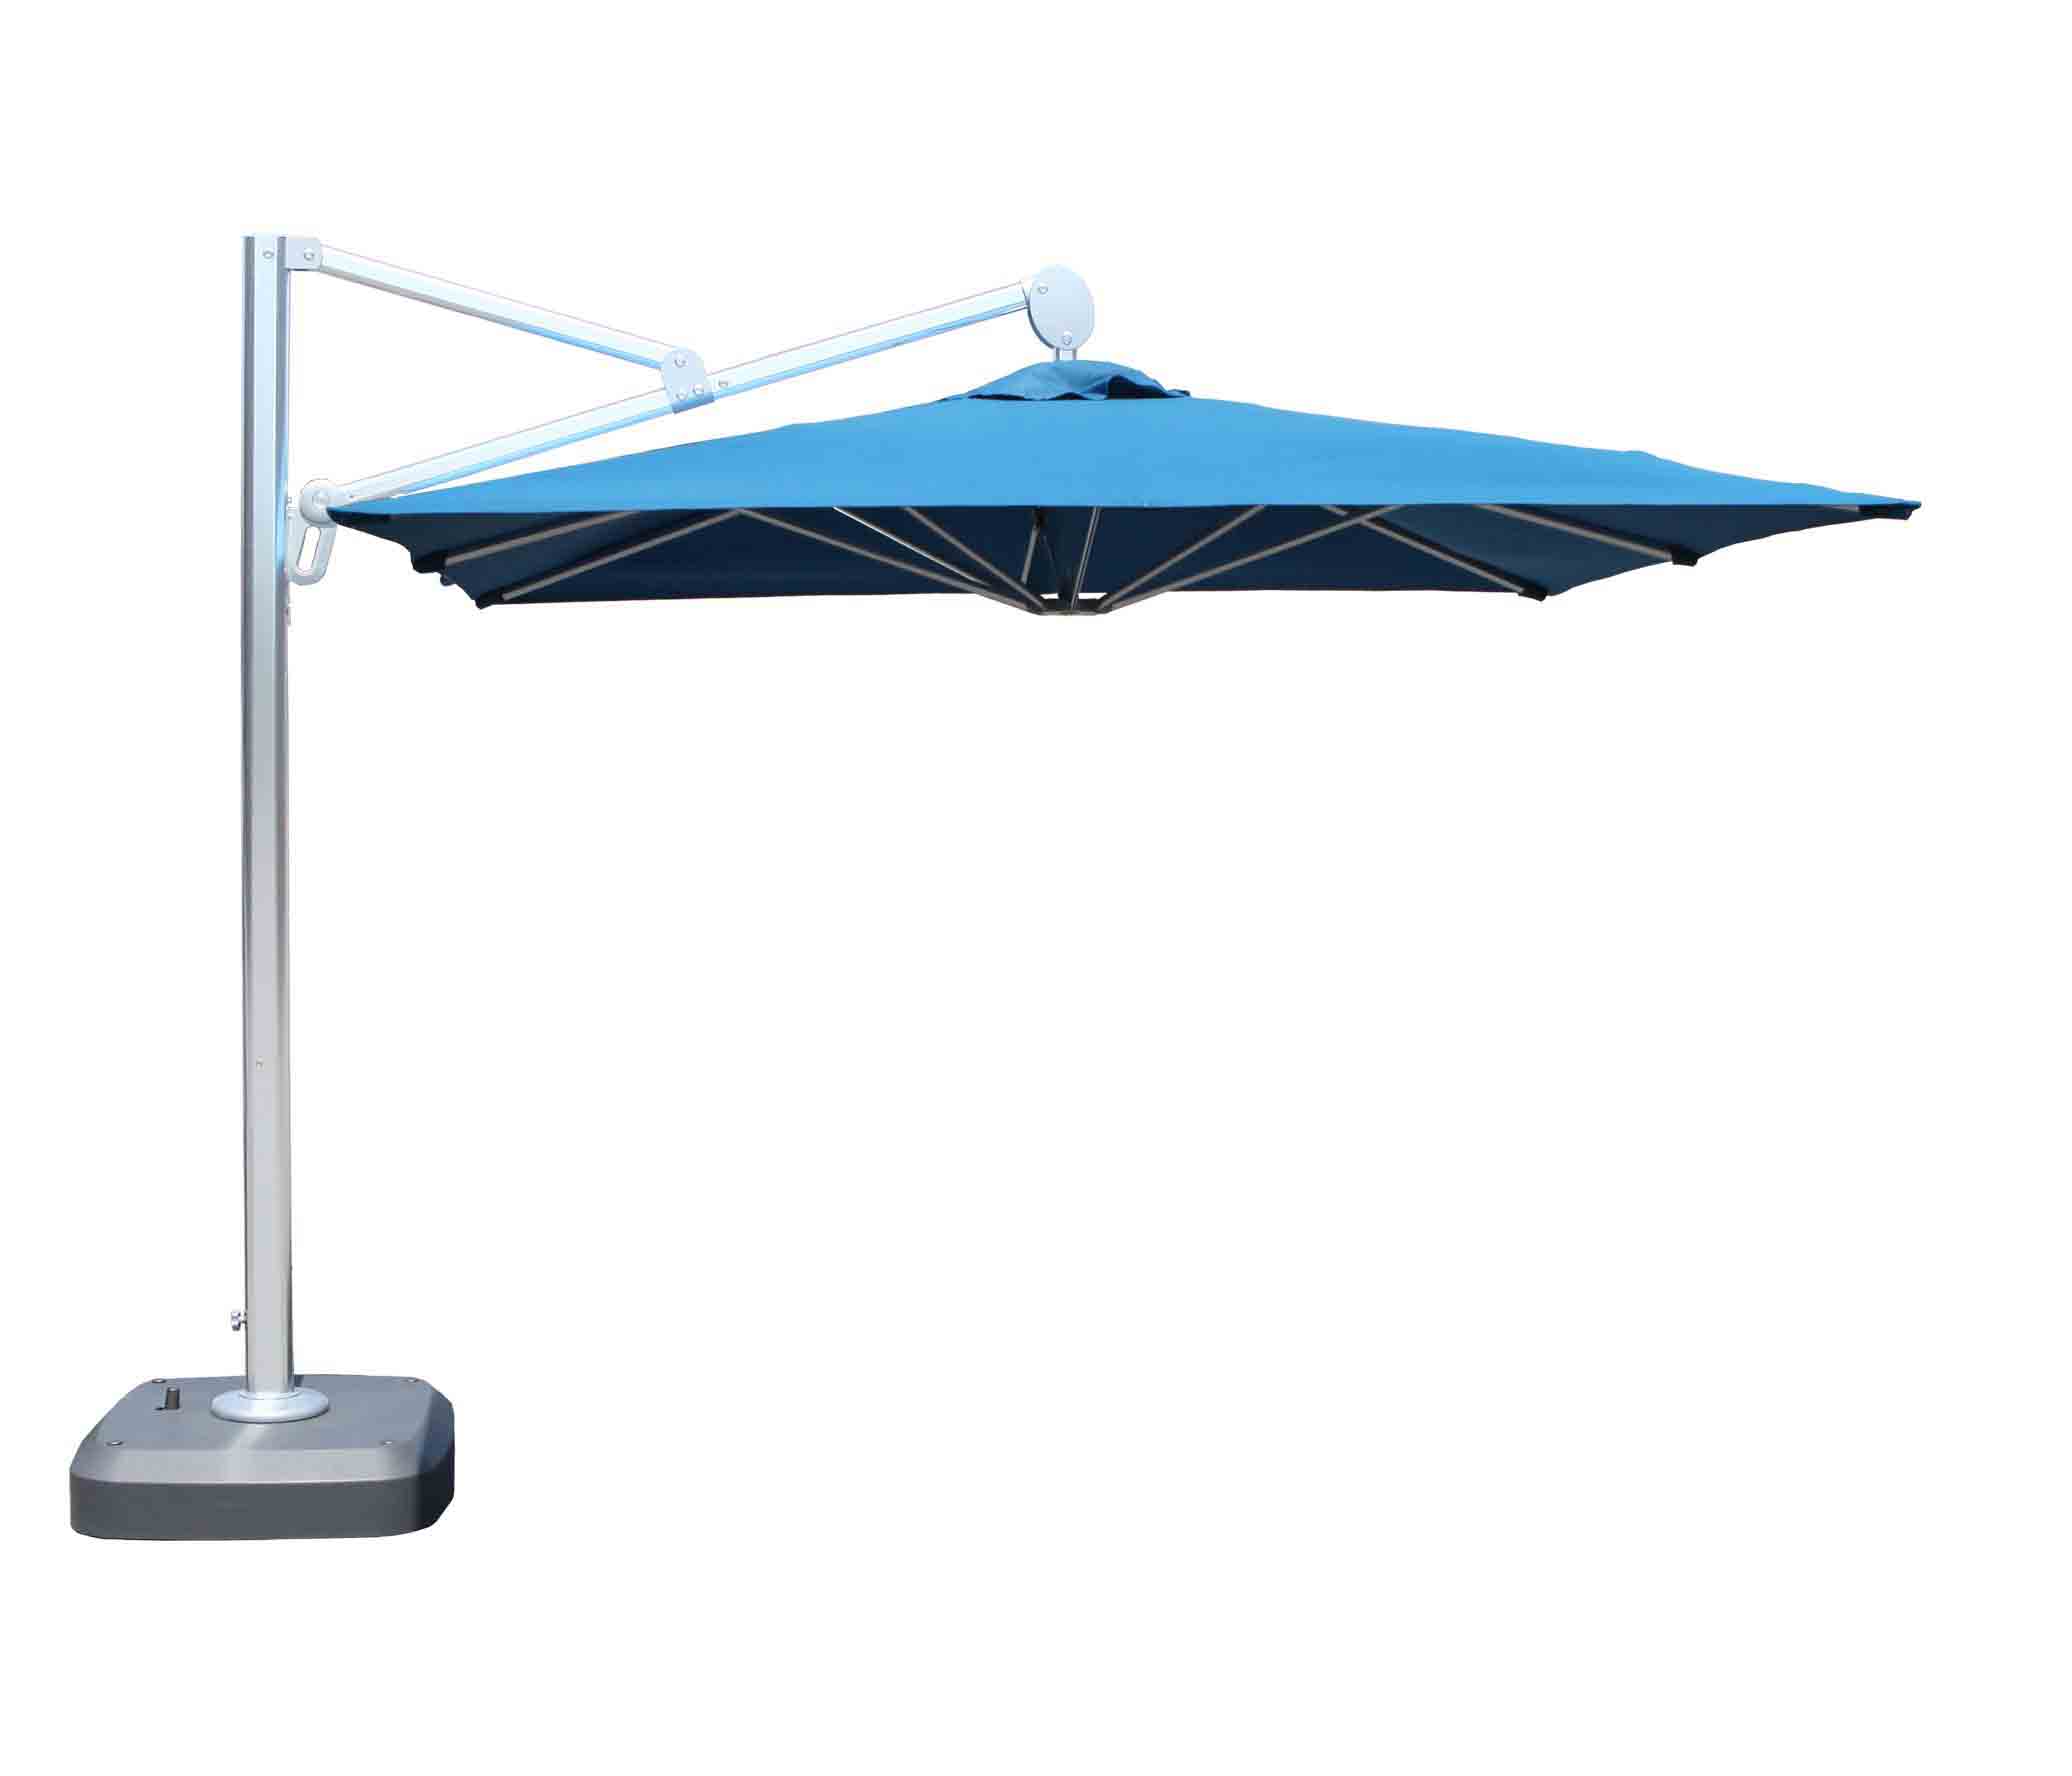 Patio Umbrella : Apex 10 ft. Square Cantilever